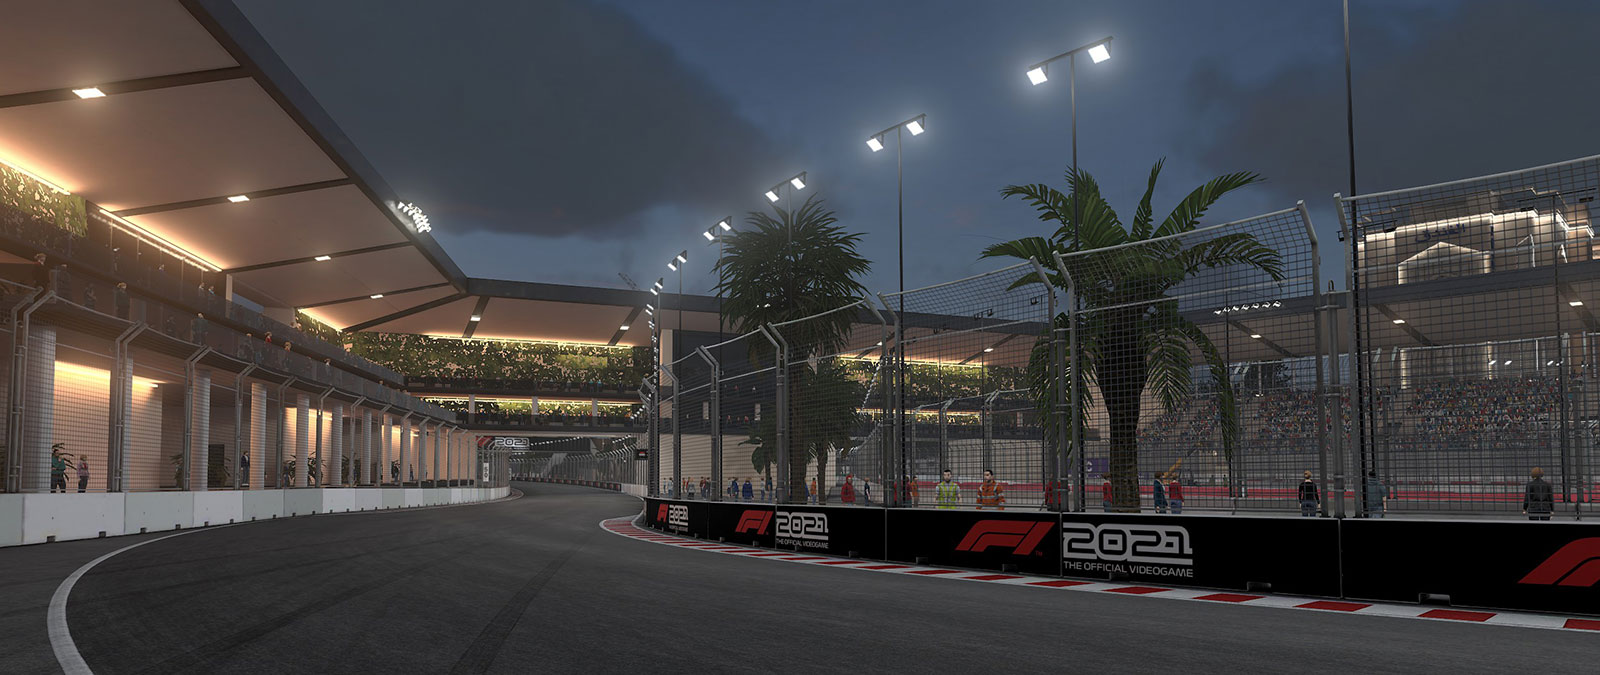 Justo después del atardecer, una pista de F1 se ilumina con farolas mientras los aficionados observan desde las gradas.